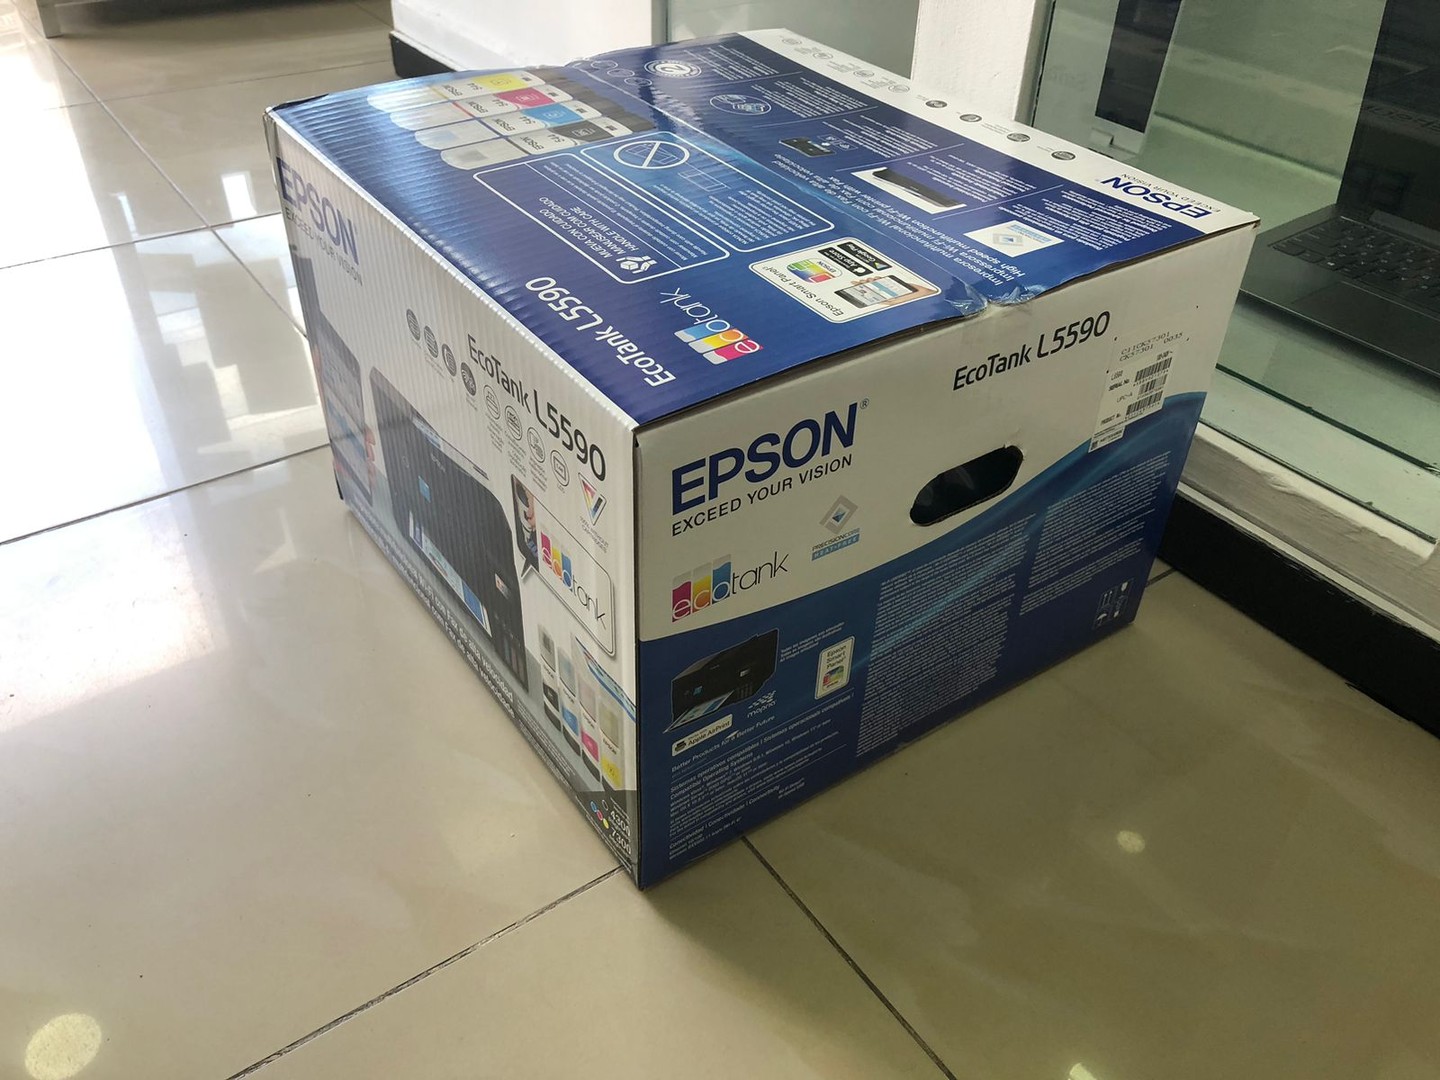 impresoras y scanners - OFERTA Impresora Epson L5590 a WIFI y USB, Multifuncional con bandeja ADF 3